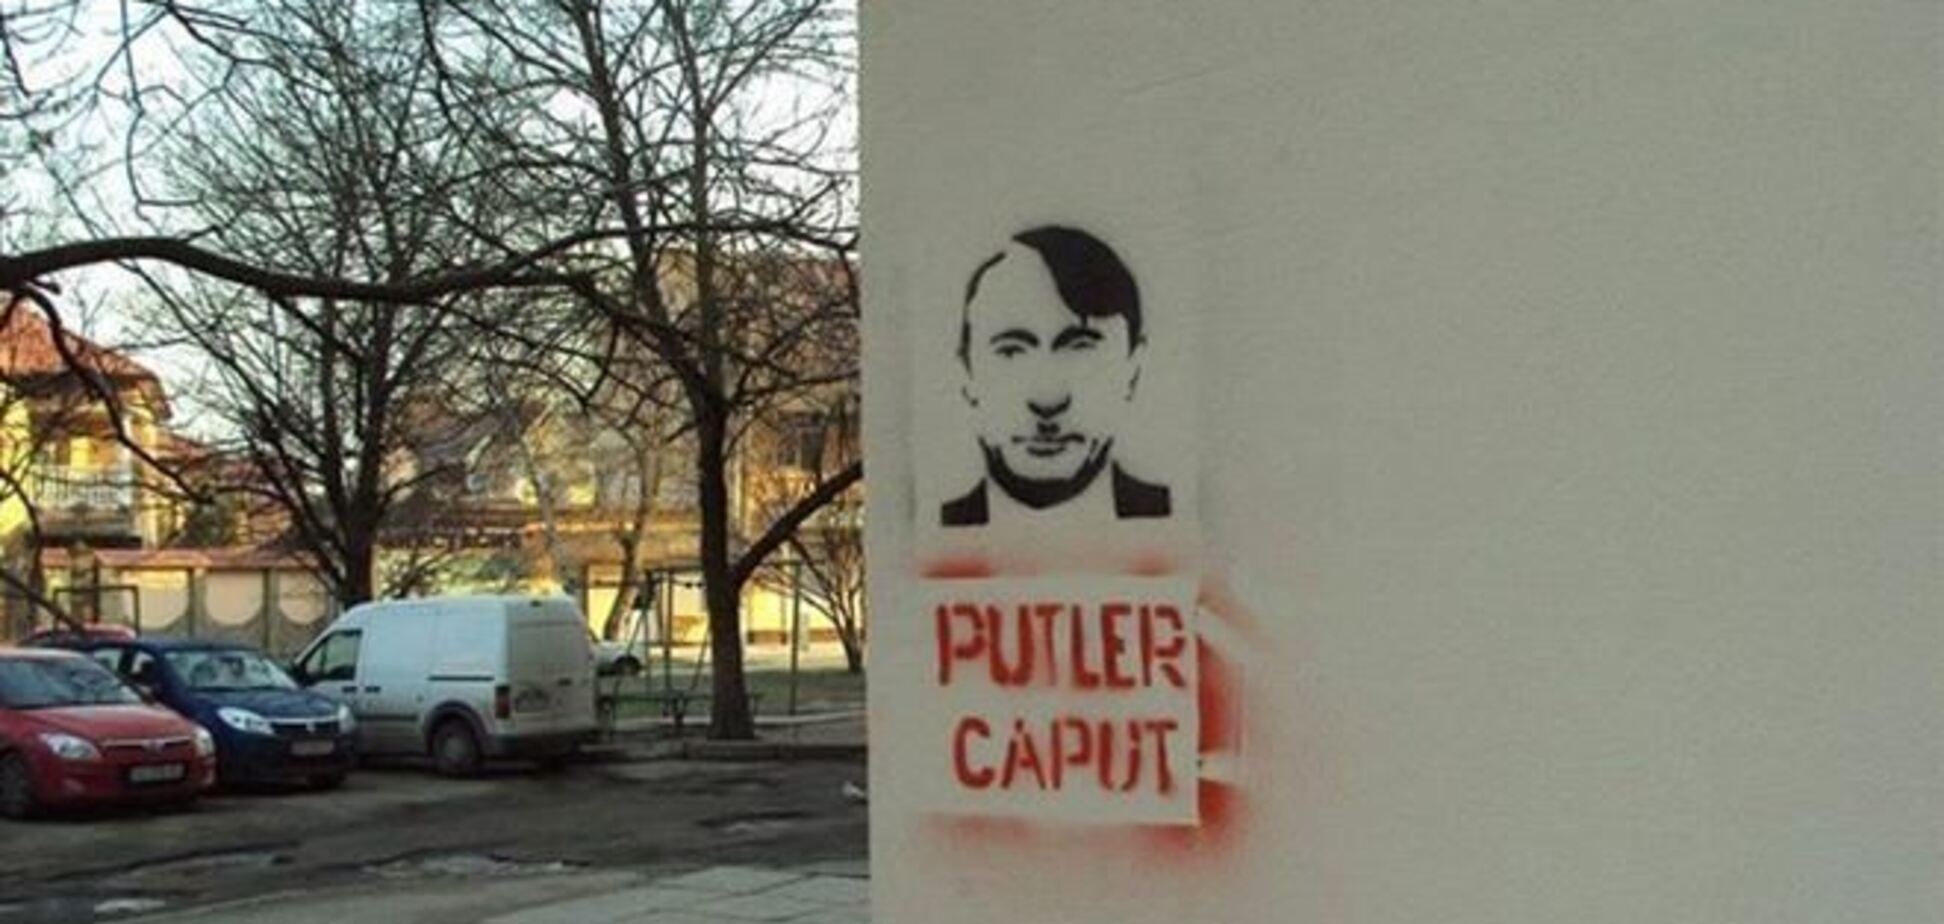 У Сімферополі з'явилися графіті із зображенням Путіна: 'Putler Caput'